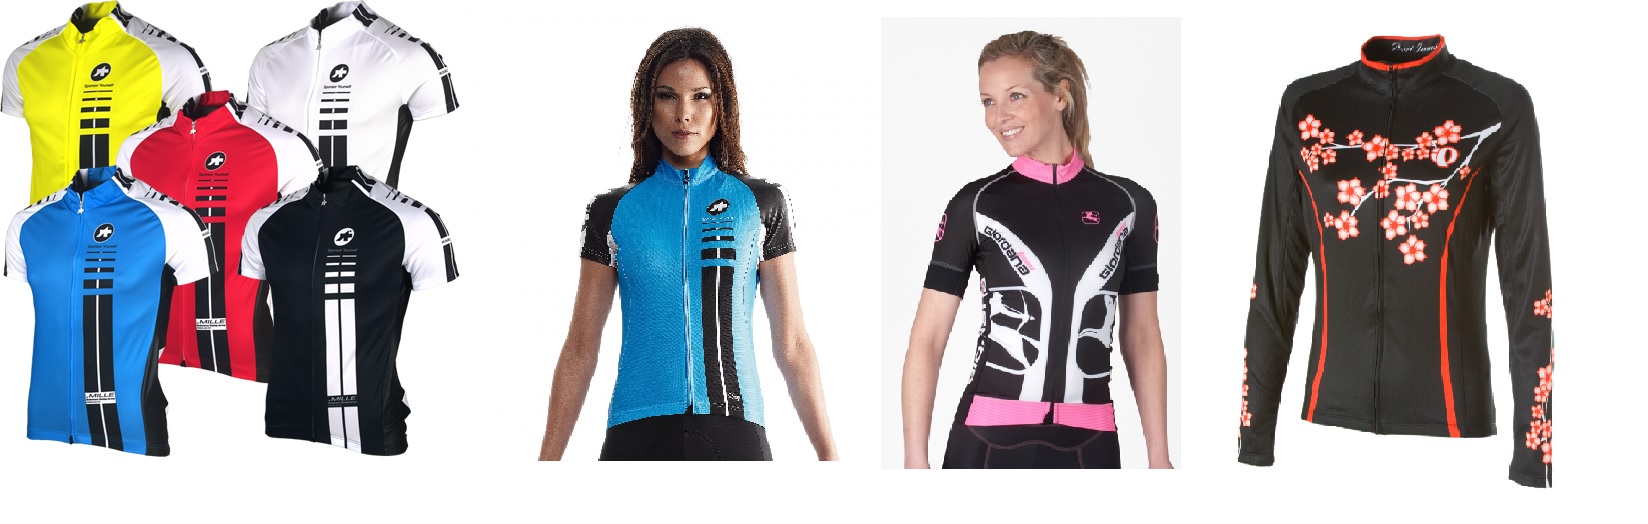 Assos, Pearl Izumi and Giordana cycling jerseys.